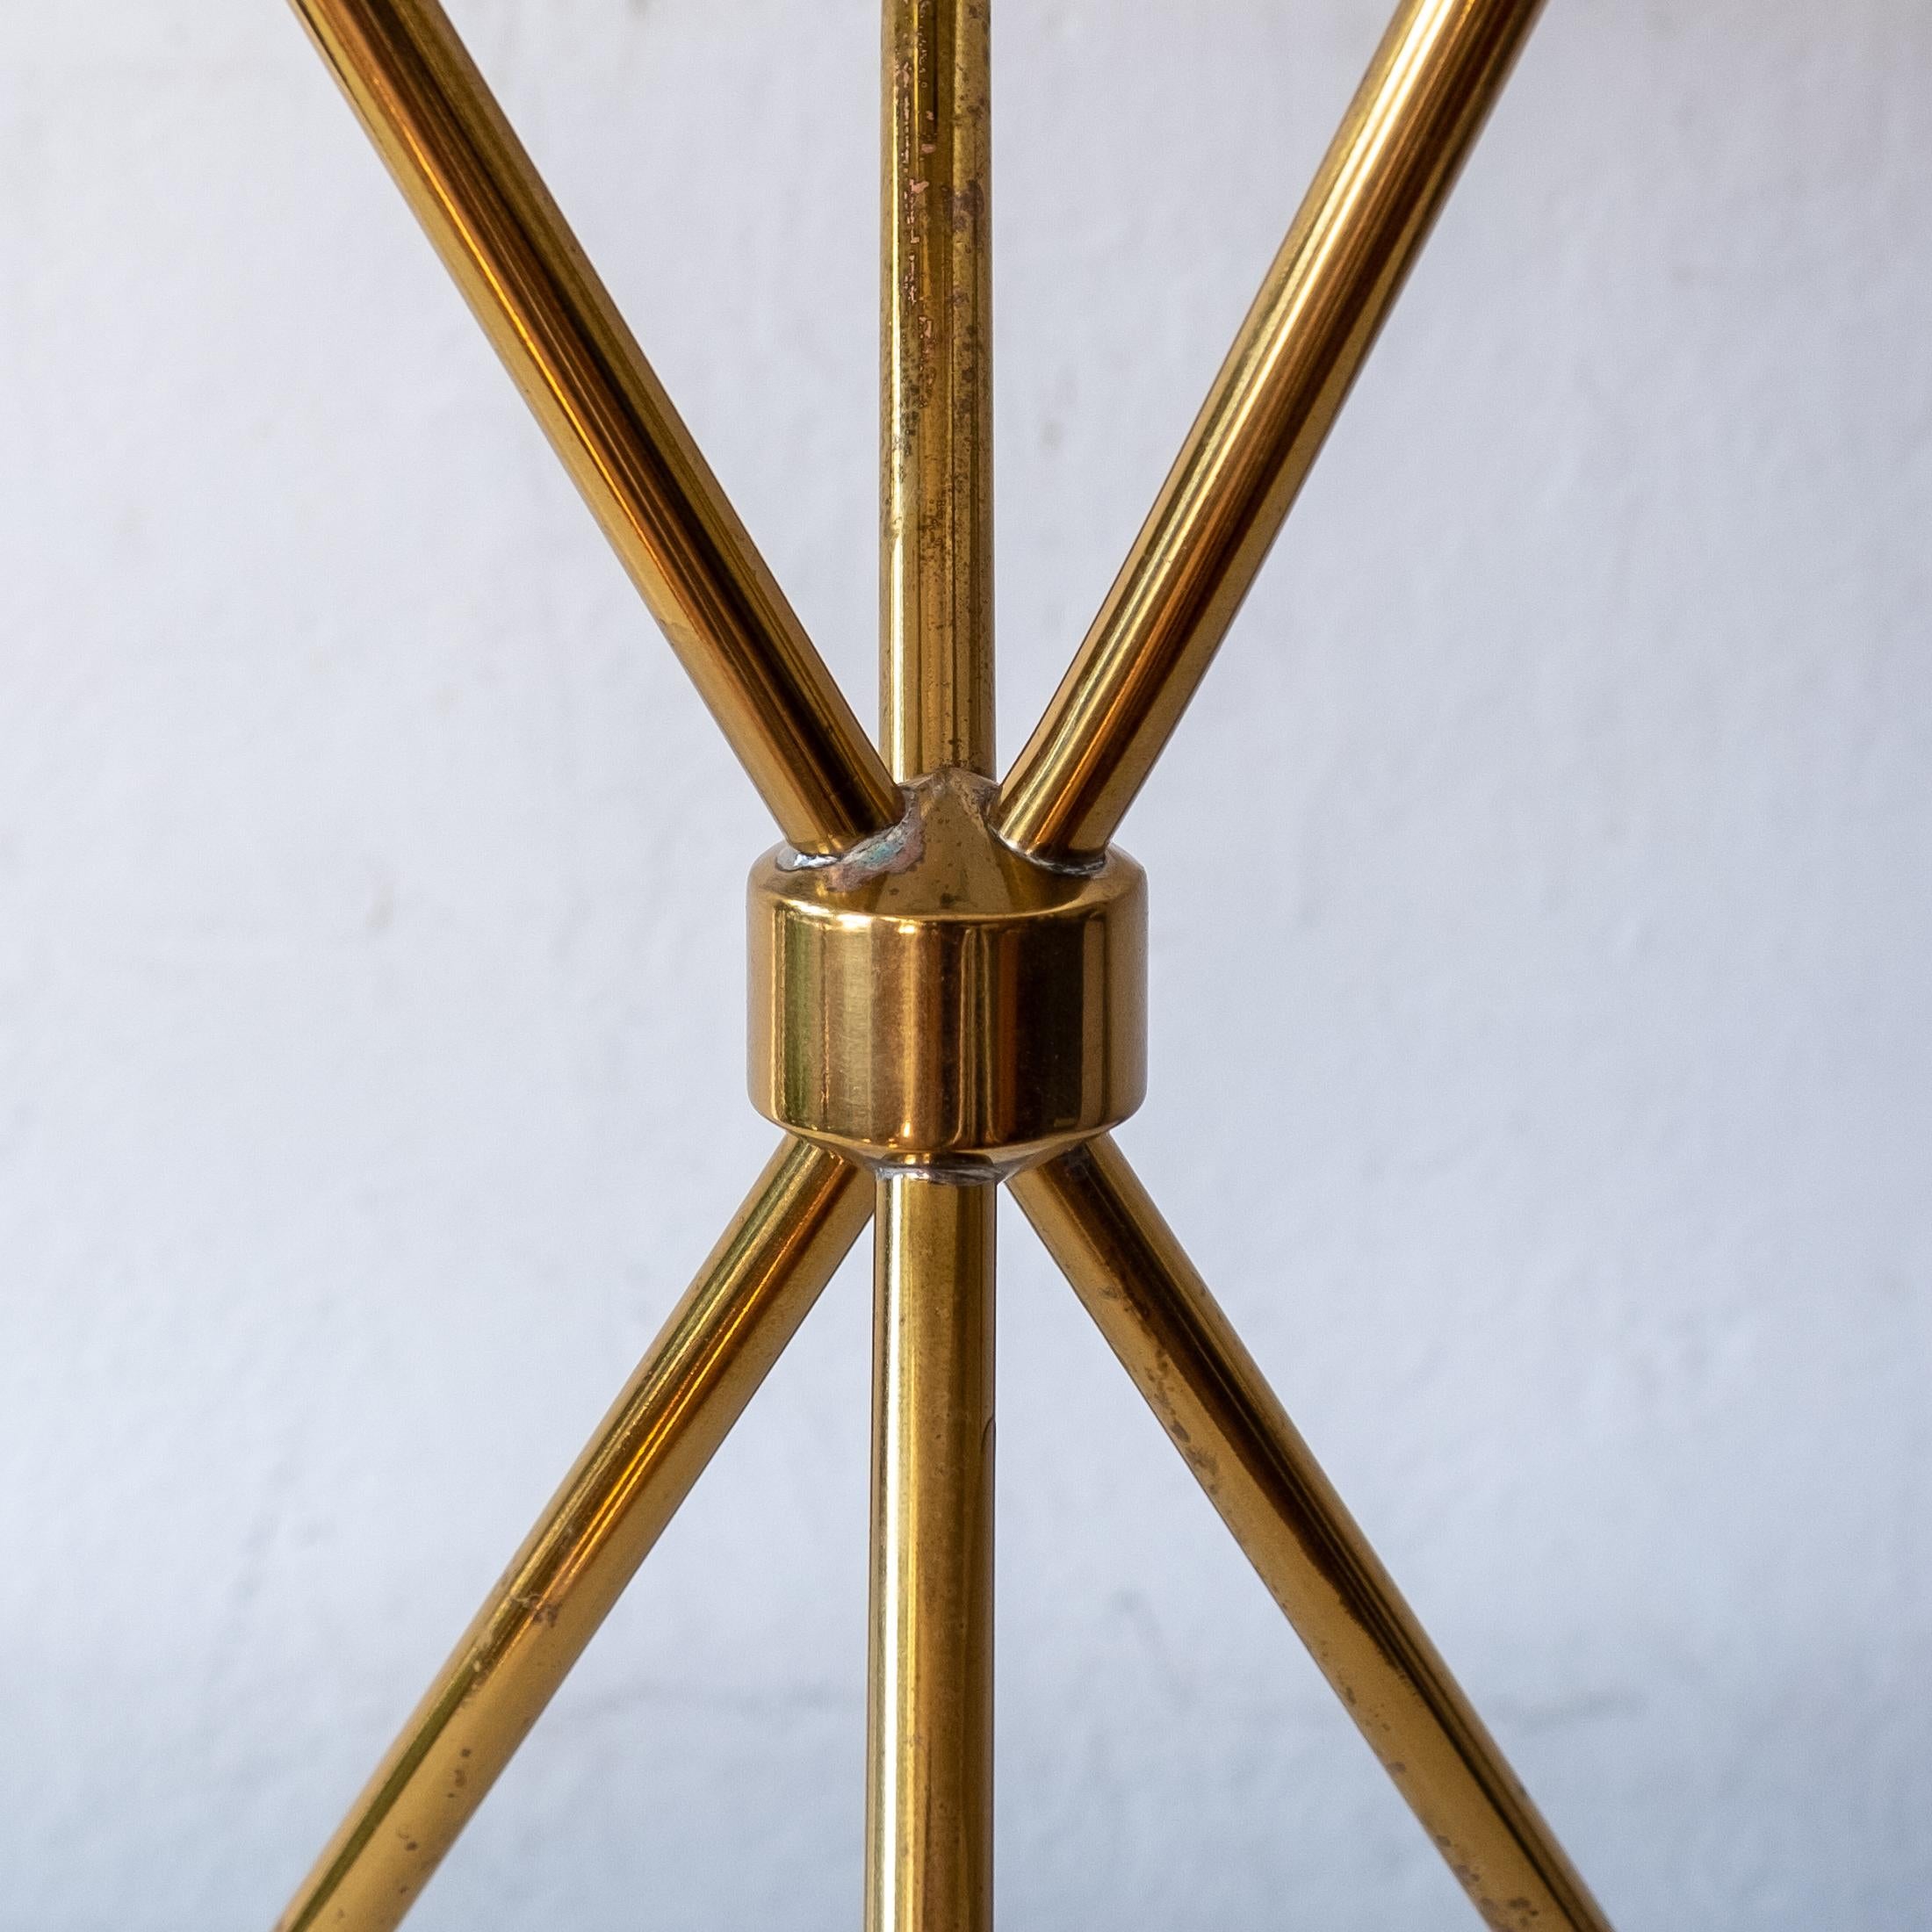 American Brass Tripod Table Lamp by Robsjohn-Gibbings for Hansen